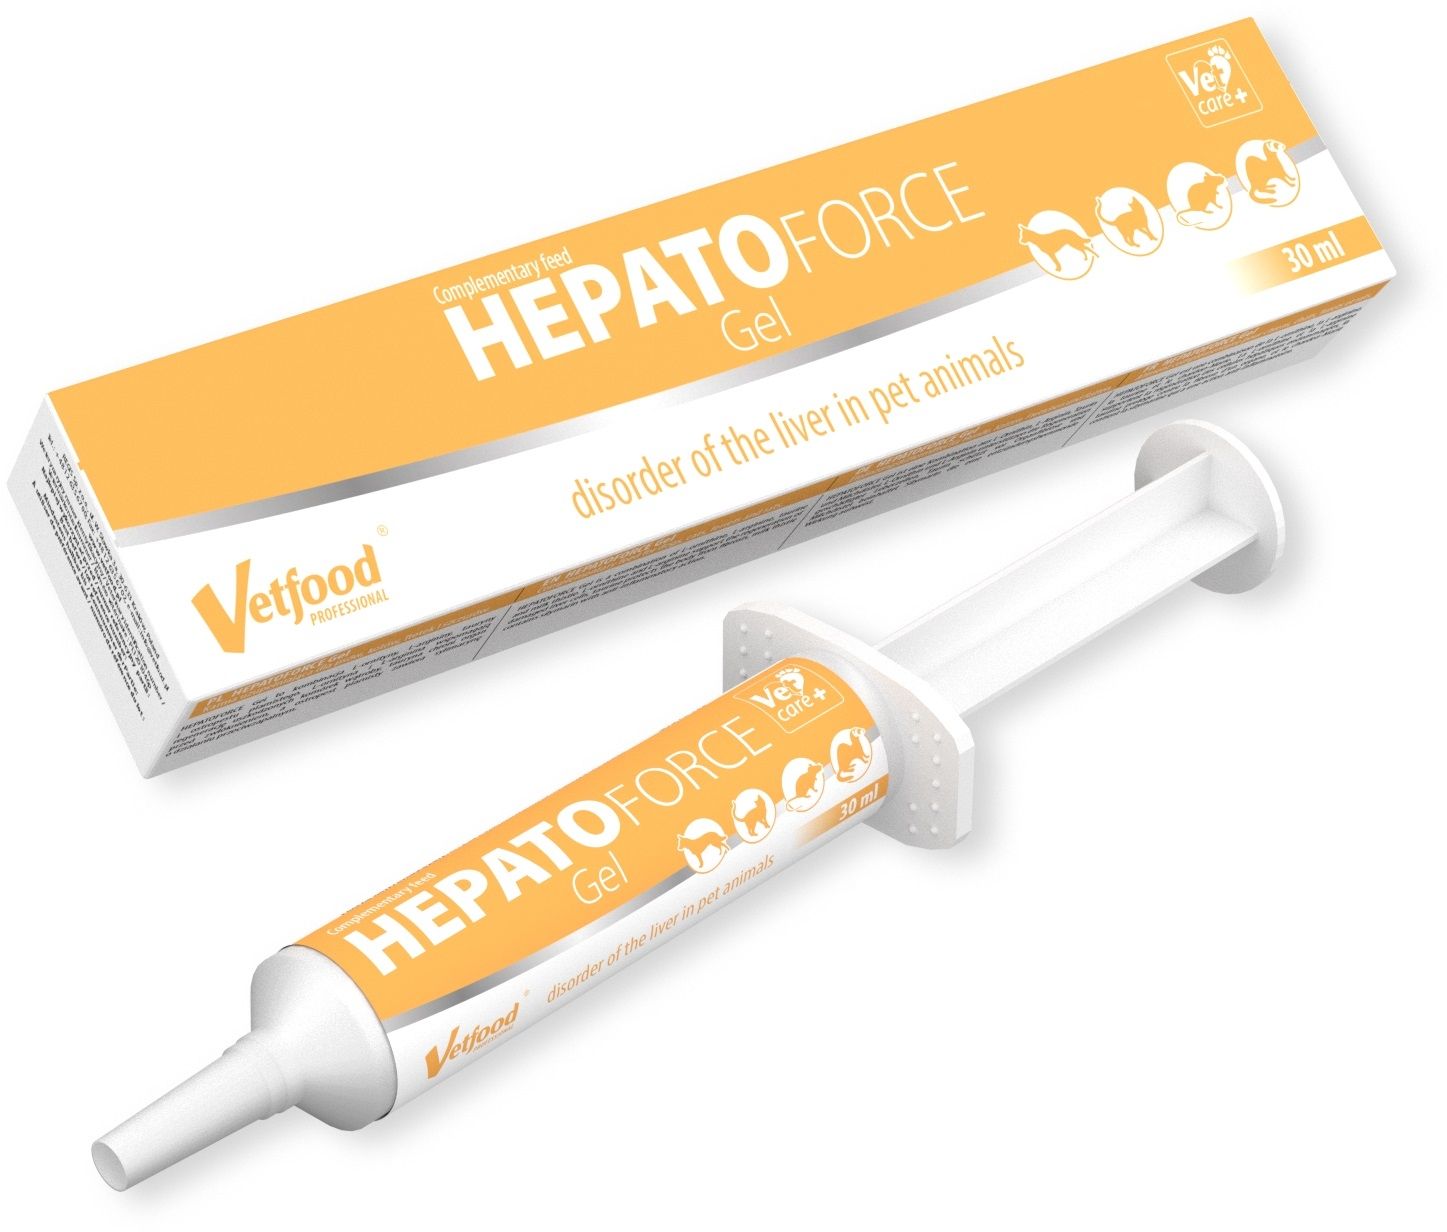 VetFood Hepato Force Gel, 30 ml